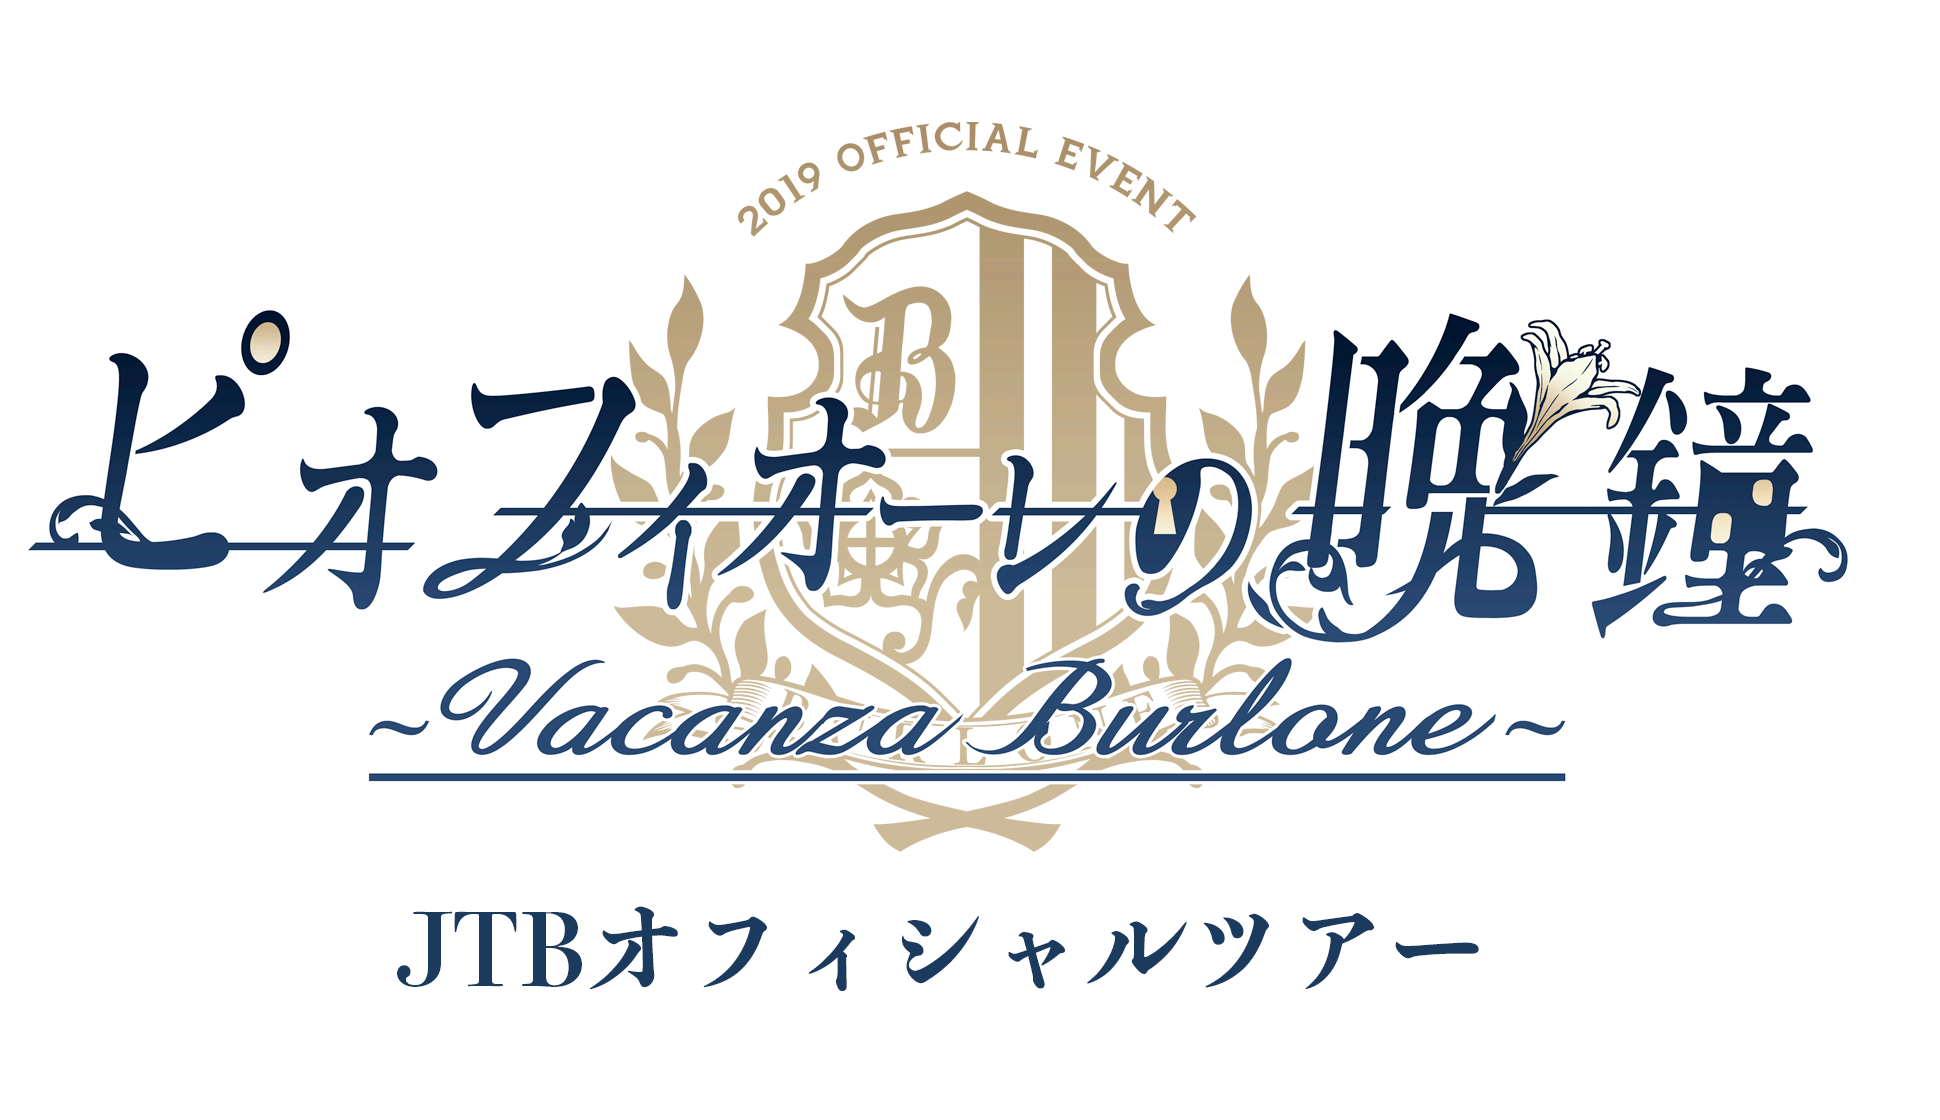 ピオフィオーレの晩鐘 ～Vacanza Burlone～<br>JTBオフィシャルツアー